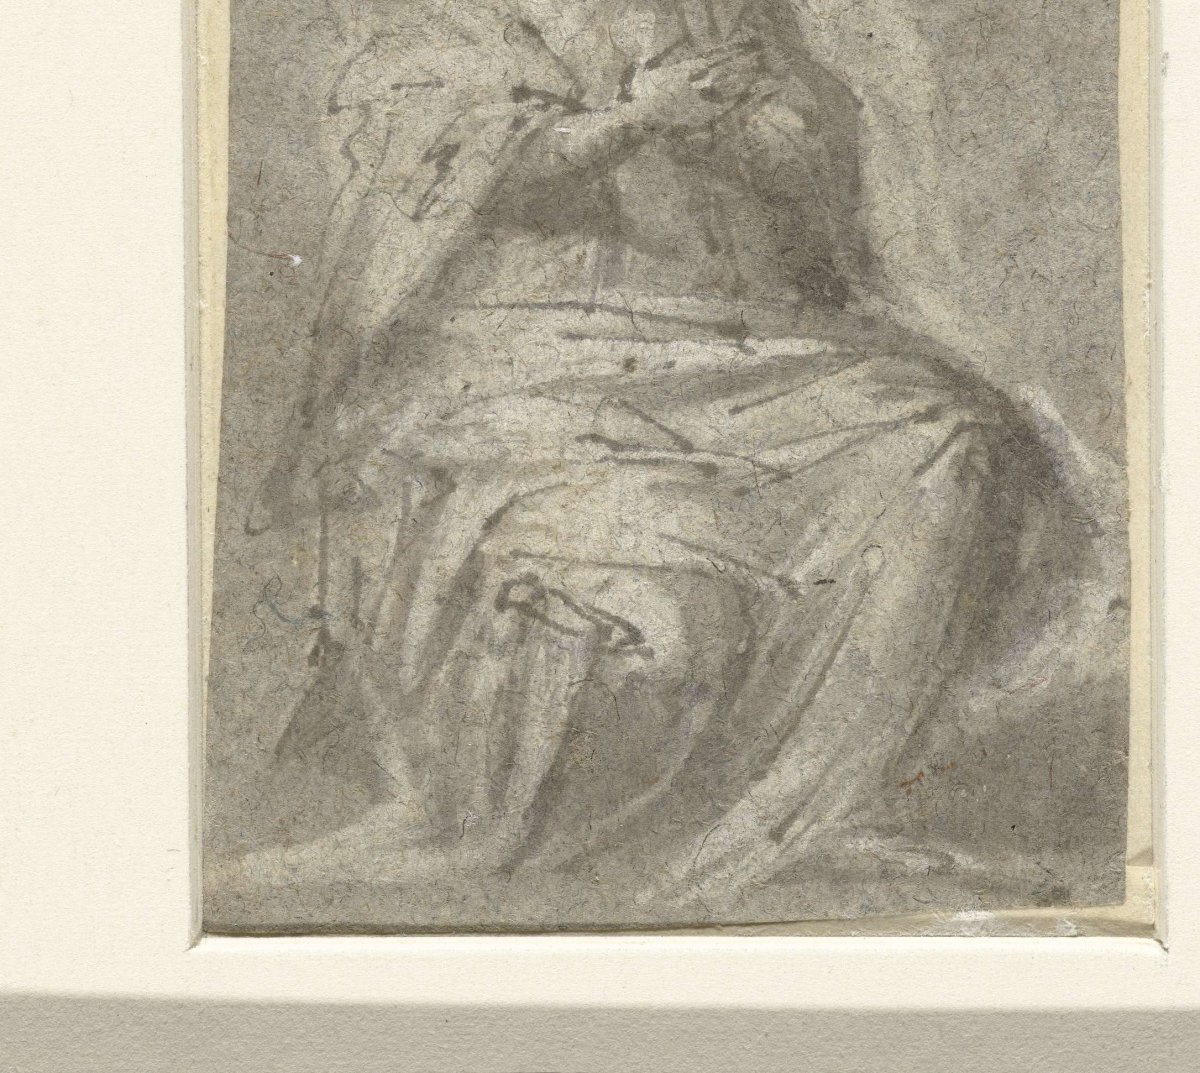 Seated woman, Polidoro da Caravaggio, 1512 - 1543